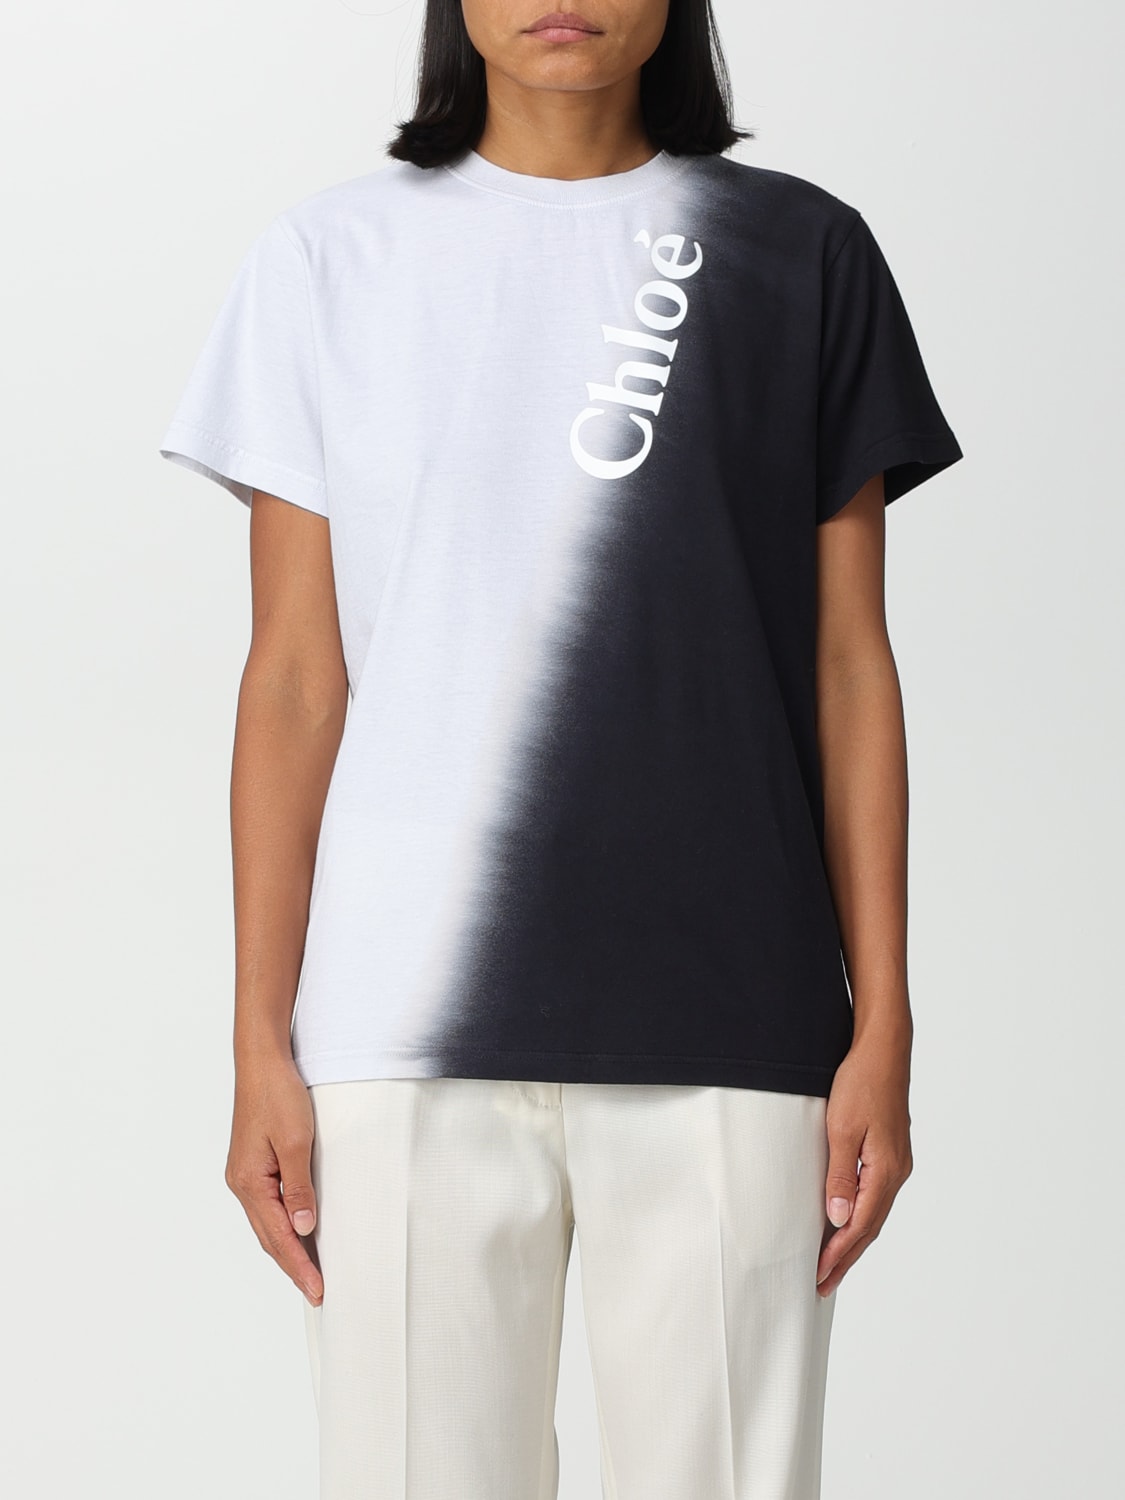 Chloé cotton t-shirt